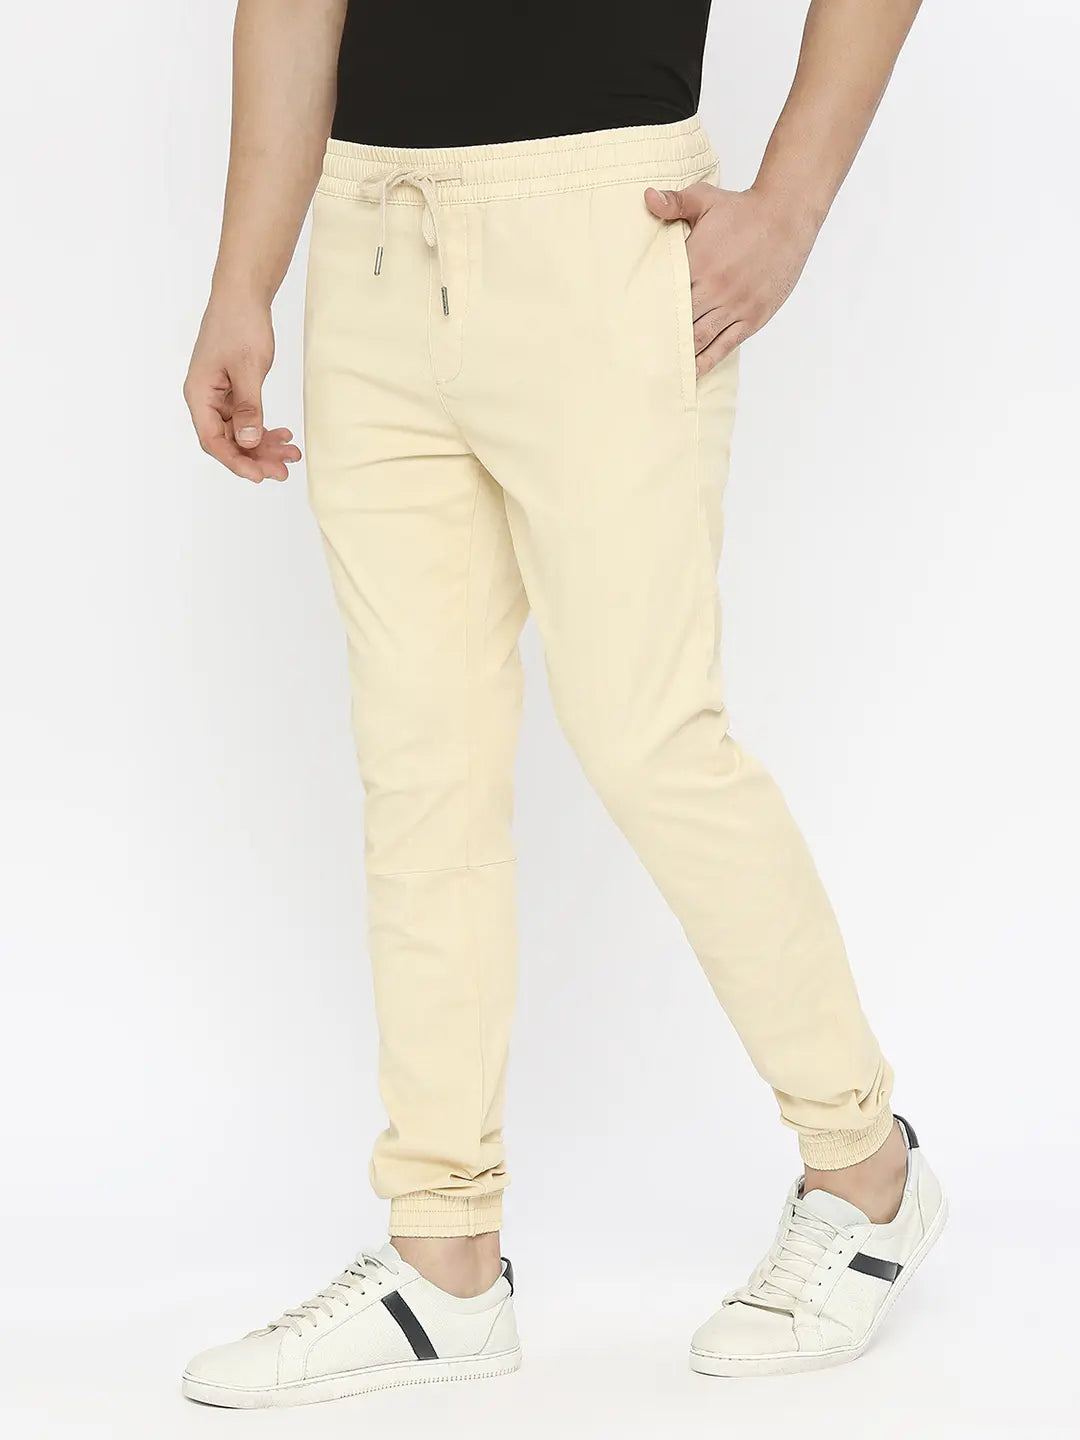 FAVOCENT Summer Men Suit Pants Korean Fashion Slim Business Casual Ankle  Length Pants | Lazada PH